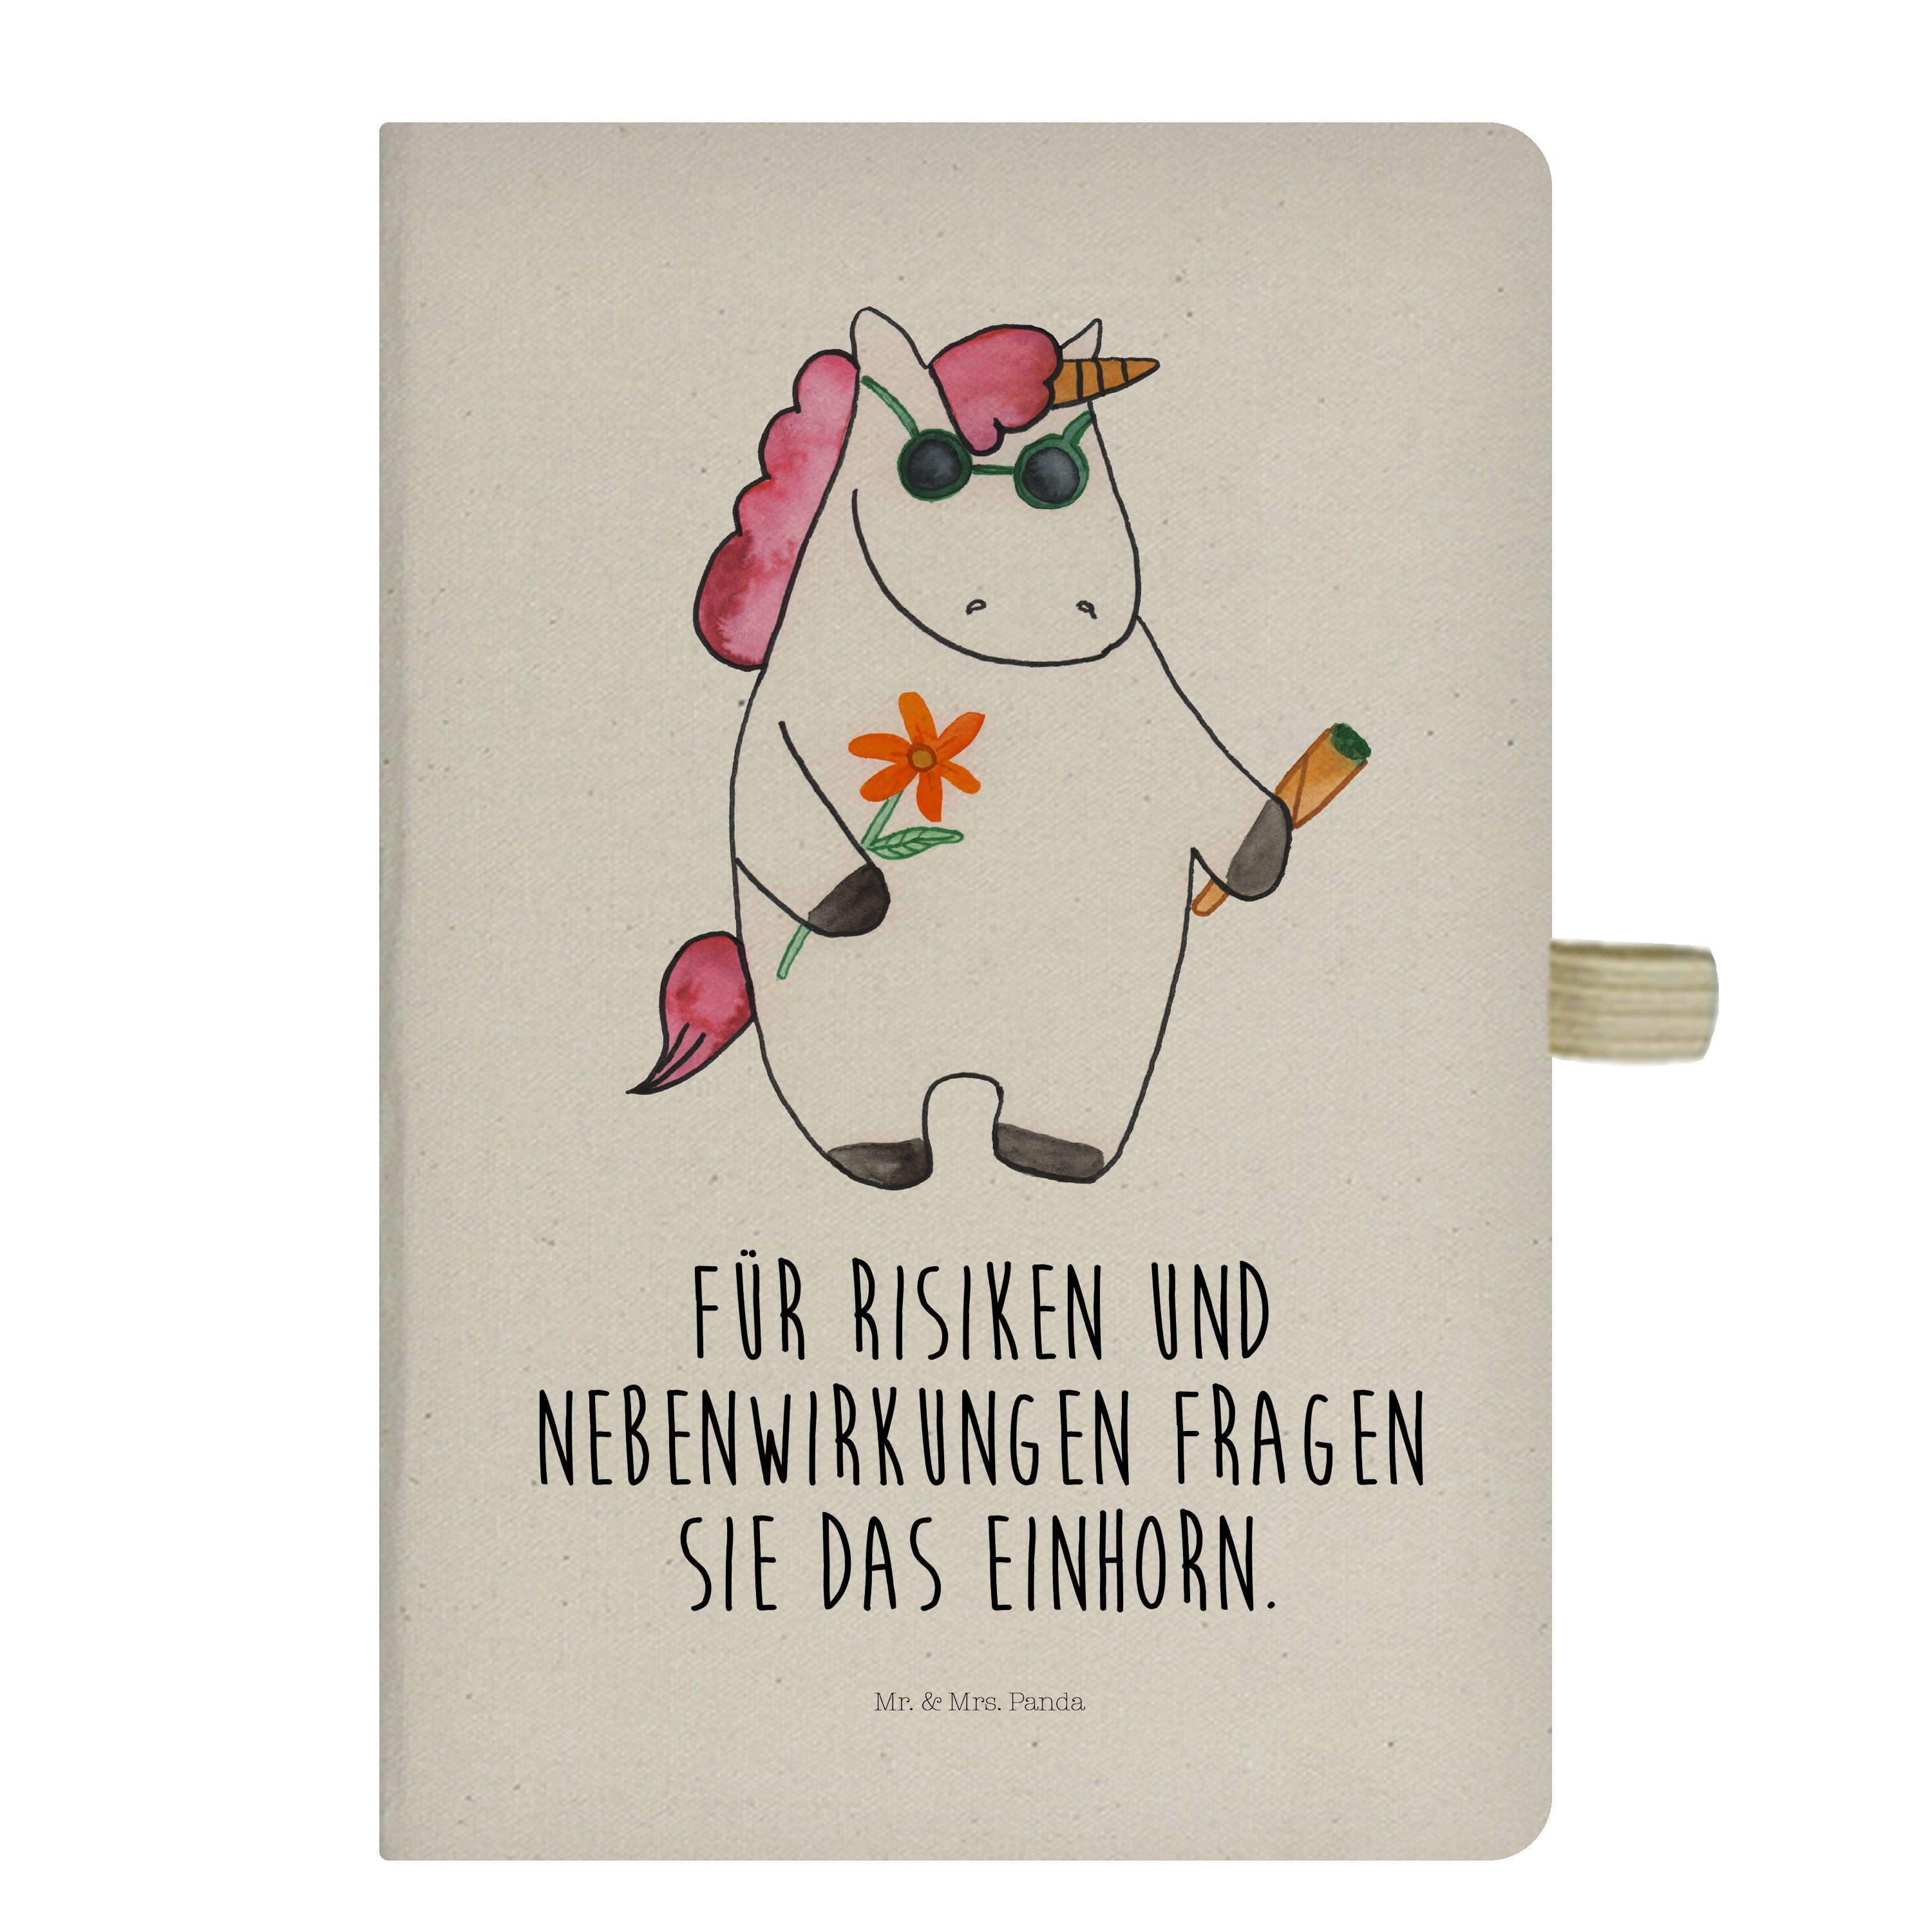 Mr. & Mrs. Panda Notizbuch Einhorn Woodstock - Transparent - Geschenk, Einhorn Deko, Einhörner, Mr. & Mrs. Panda, Stilvolles Design